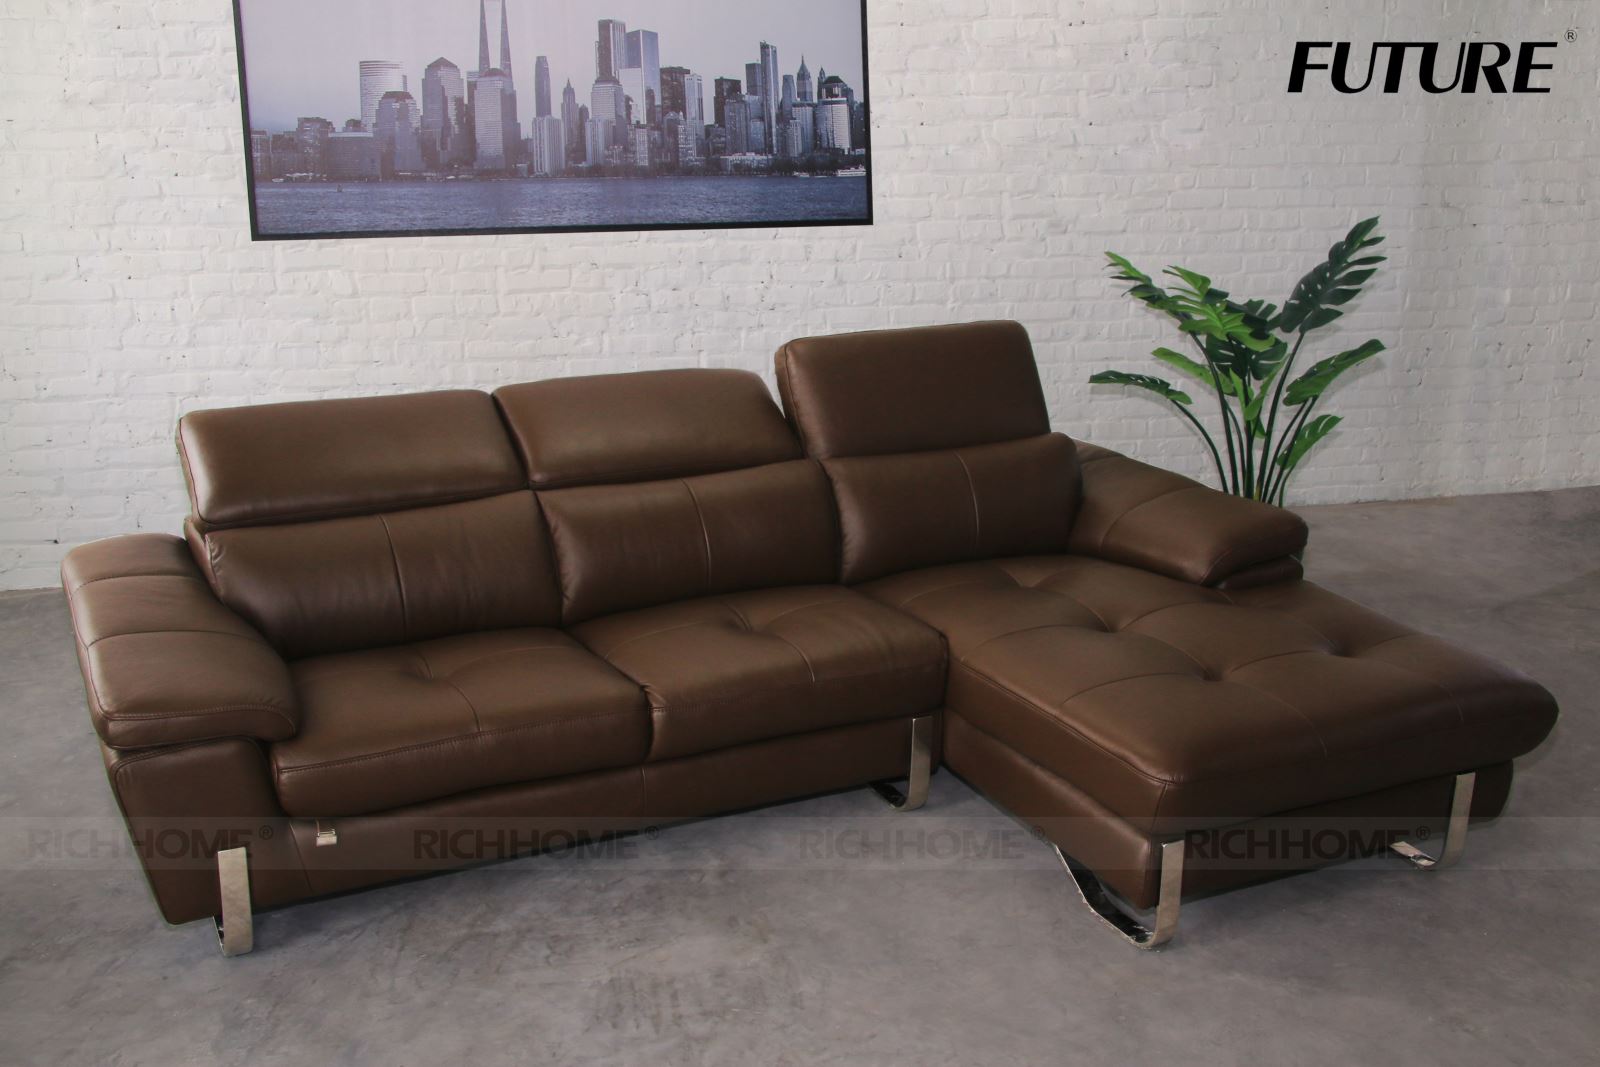 Phòng khách nổi bật với những mẫu ghế sofa da màu nâu hiện đại - Ảnh 4